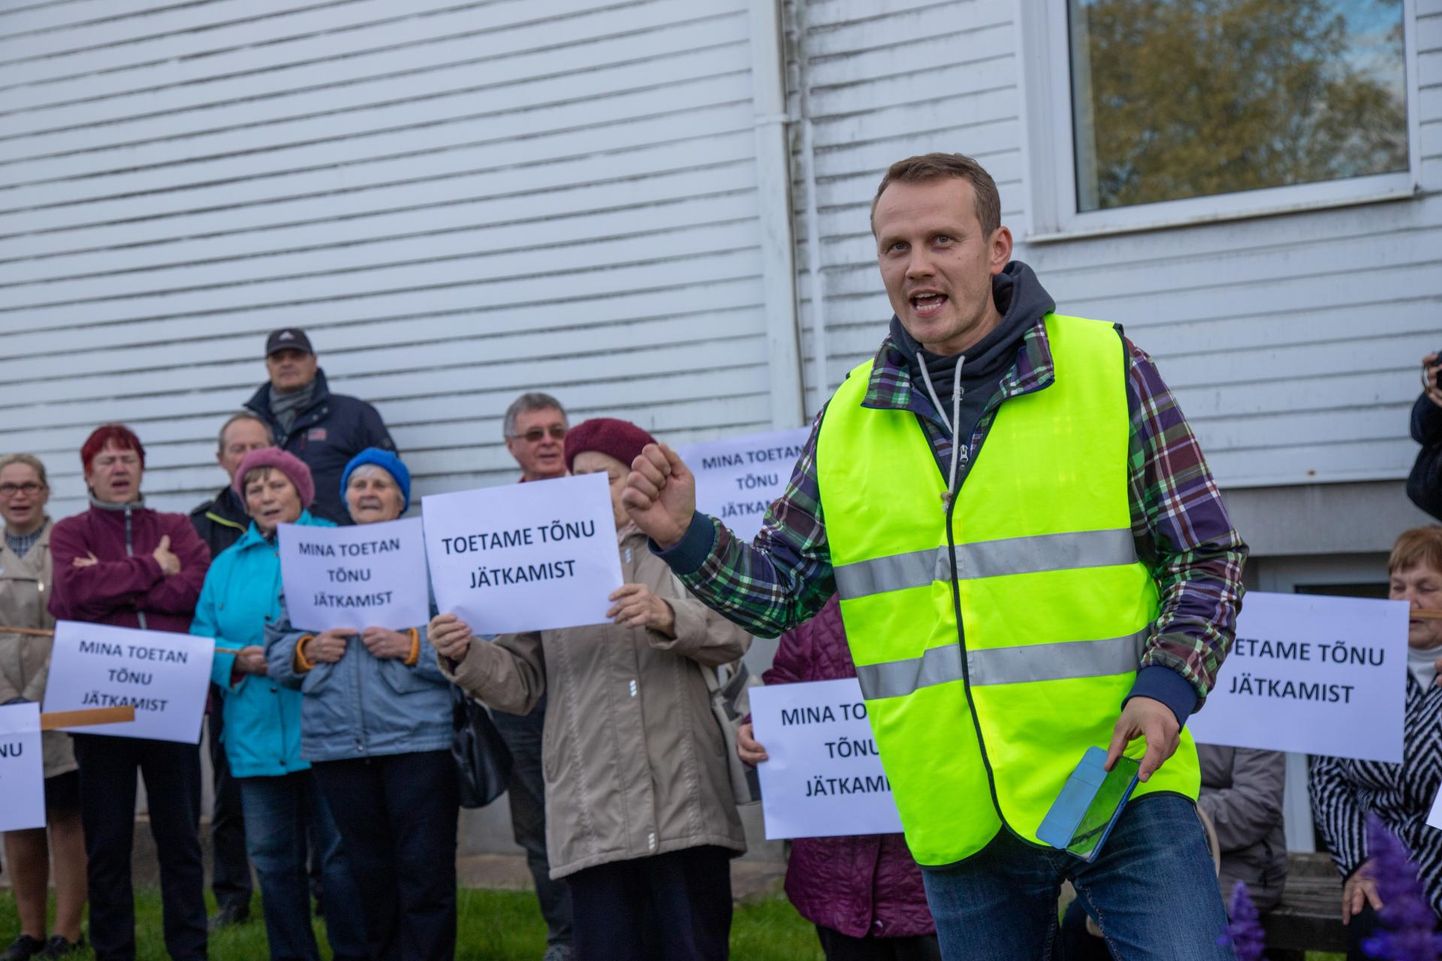 Põhja-Sakala valla võimuvahetuse ajal 2019. aastal osales Priit Toobal häälekalt vallamaja ees protestiaktsioonil, kus näitas üles toetust Tõnu Aavasalule.